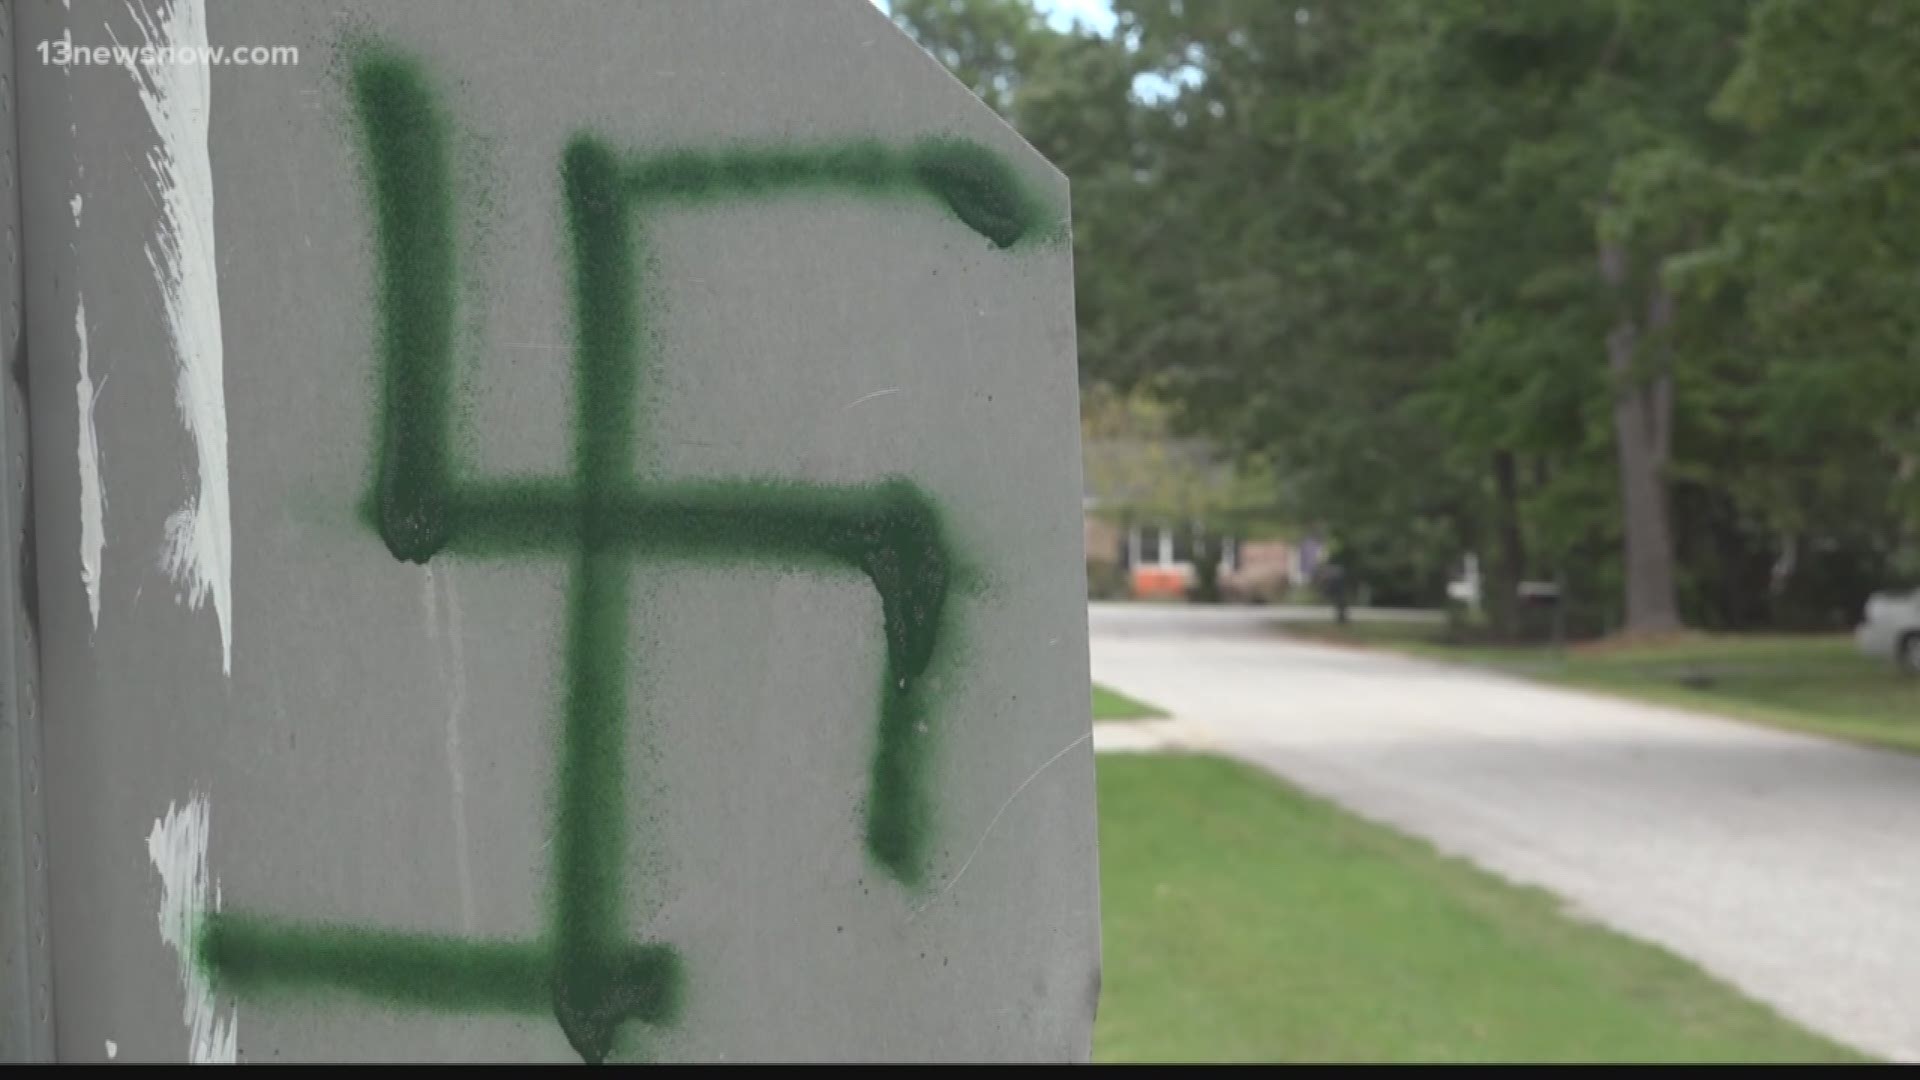 vandals strike again in York County!